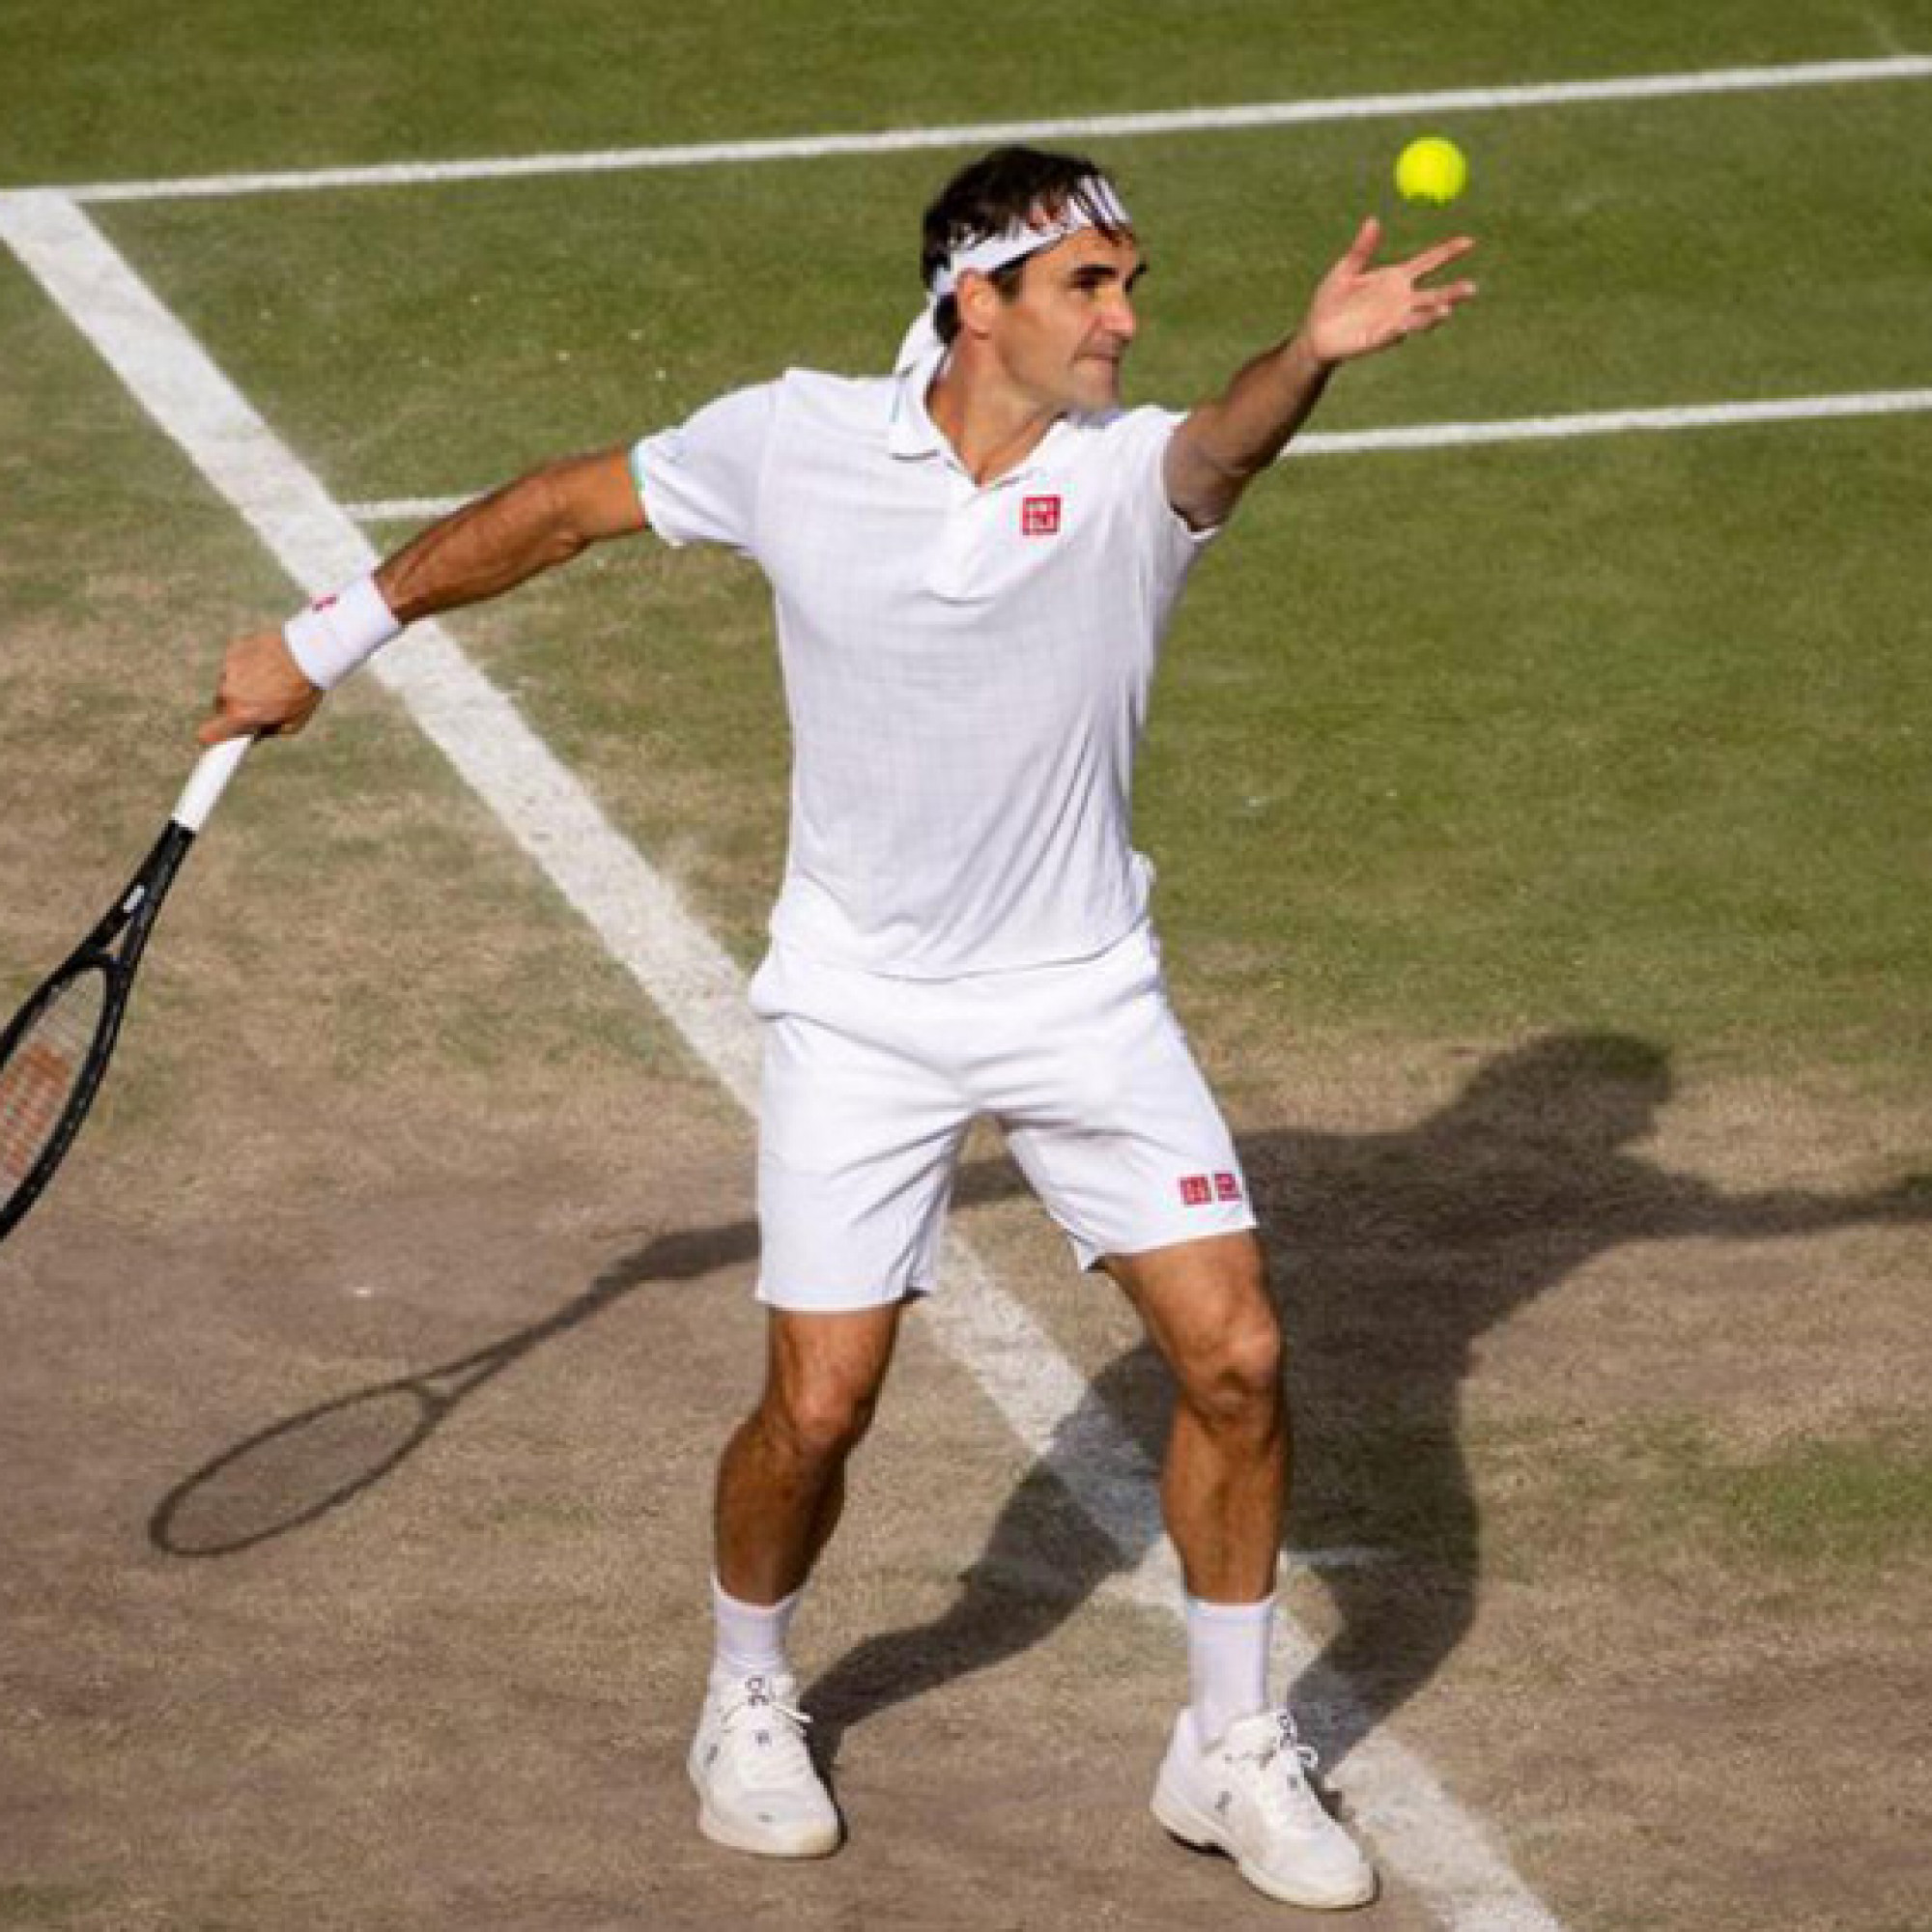  - Nóng nhất thể thao sáng 5/7: Huyền thoại tiếc vì Federer có thể giành 30 Grand Slam